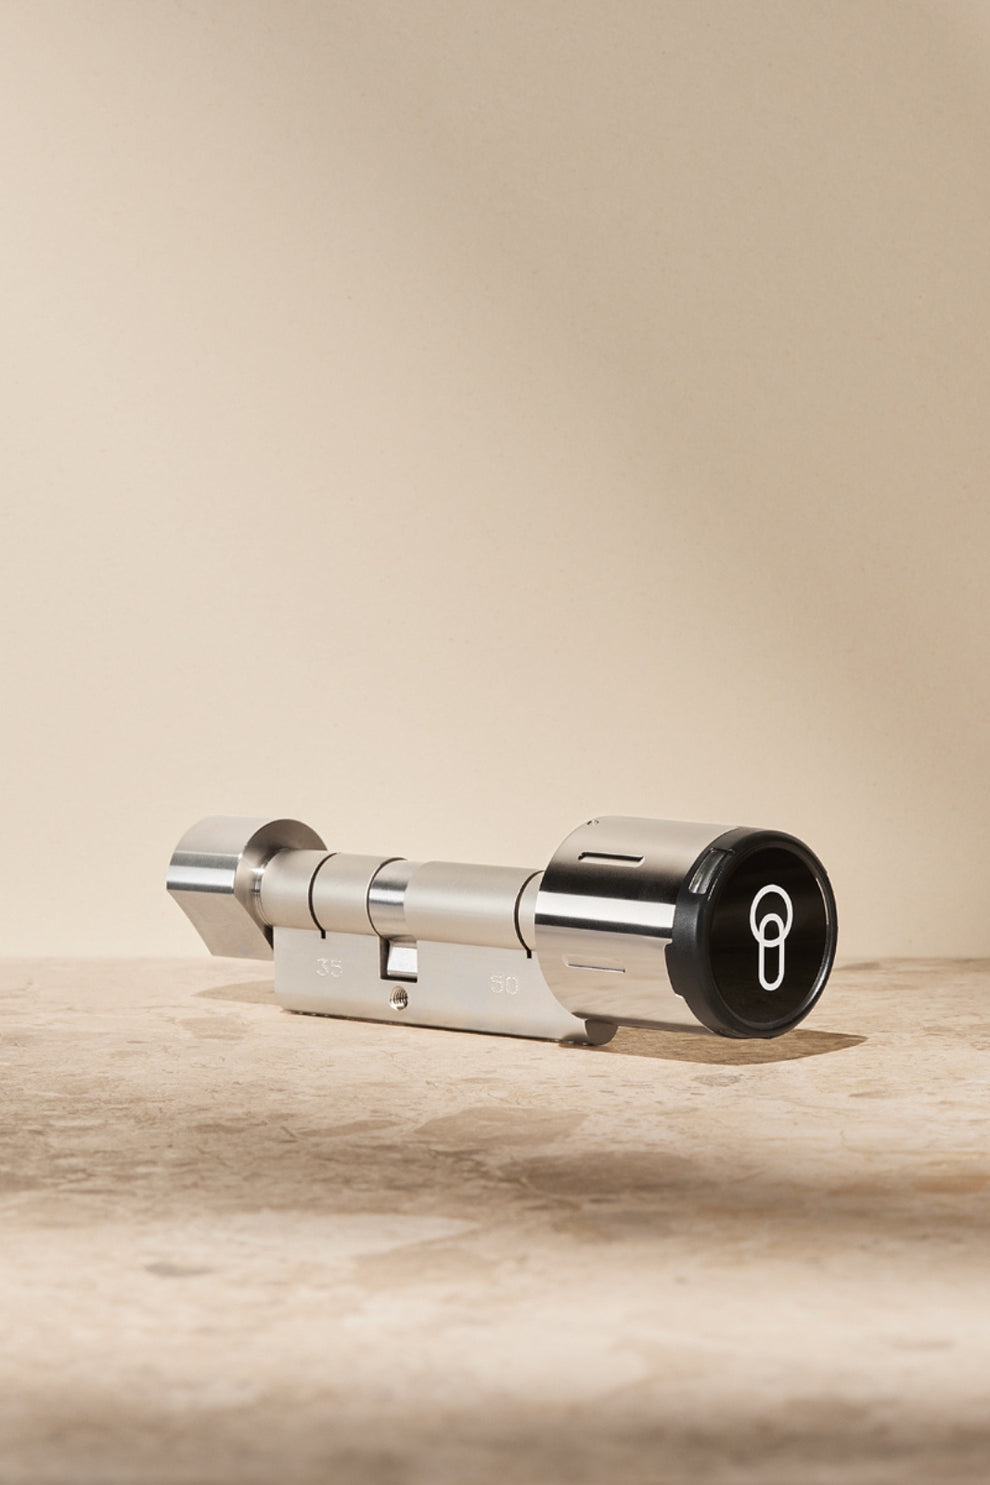 Produktbild des keyota Smart Locks vor einem einfachen Hintergrund.